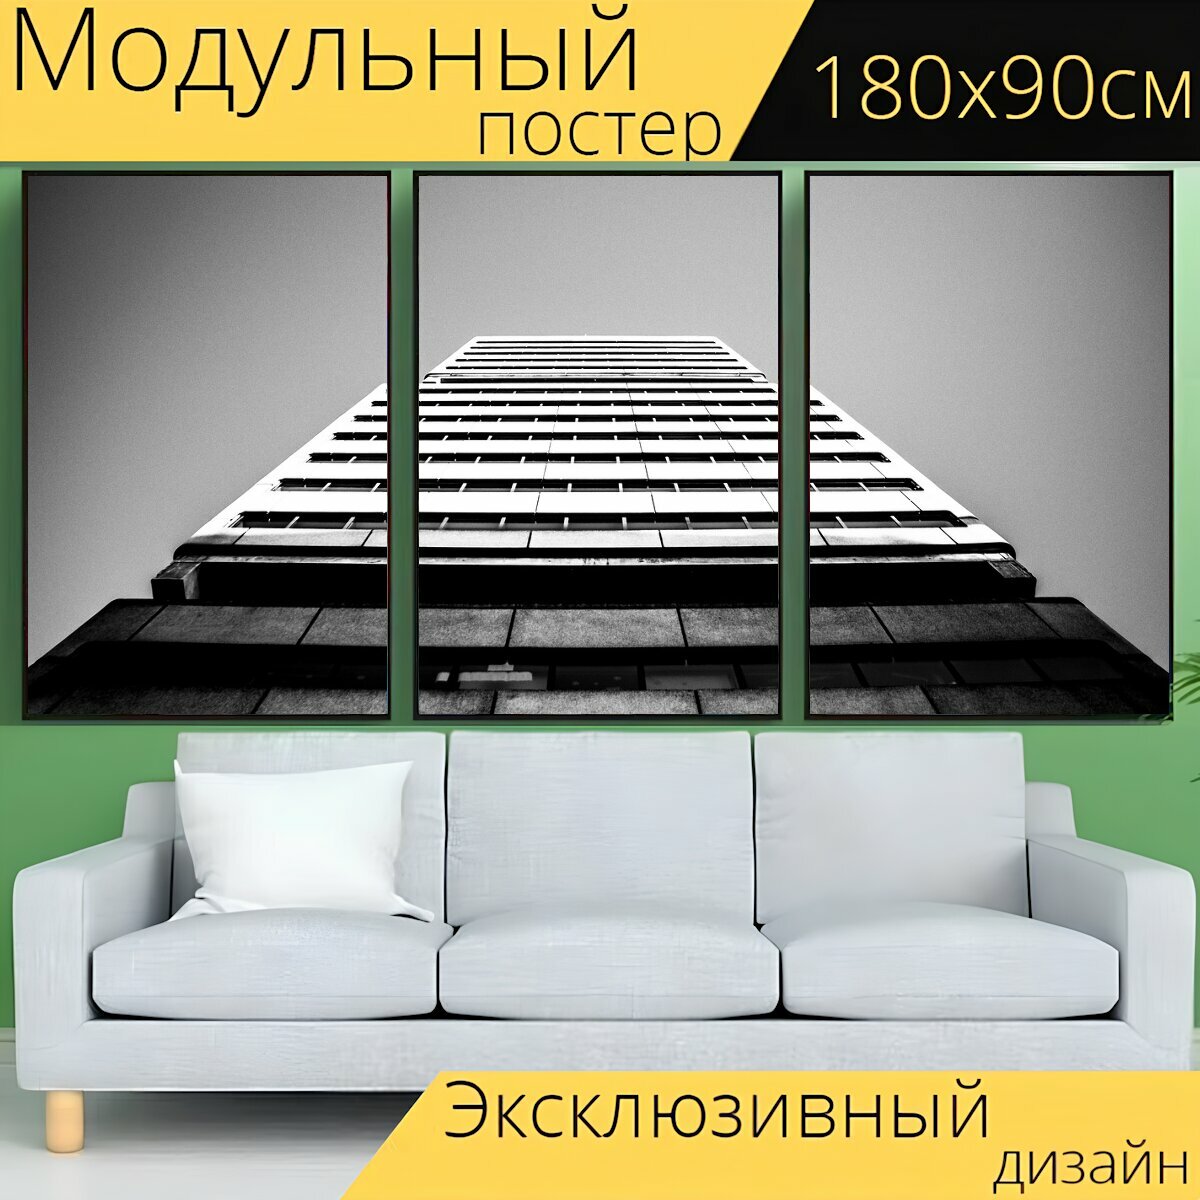 Модульный постер "Архитектуры строительство высотный" 180 x 90 см. для интерьера